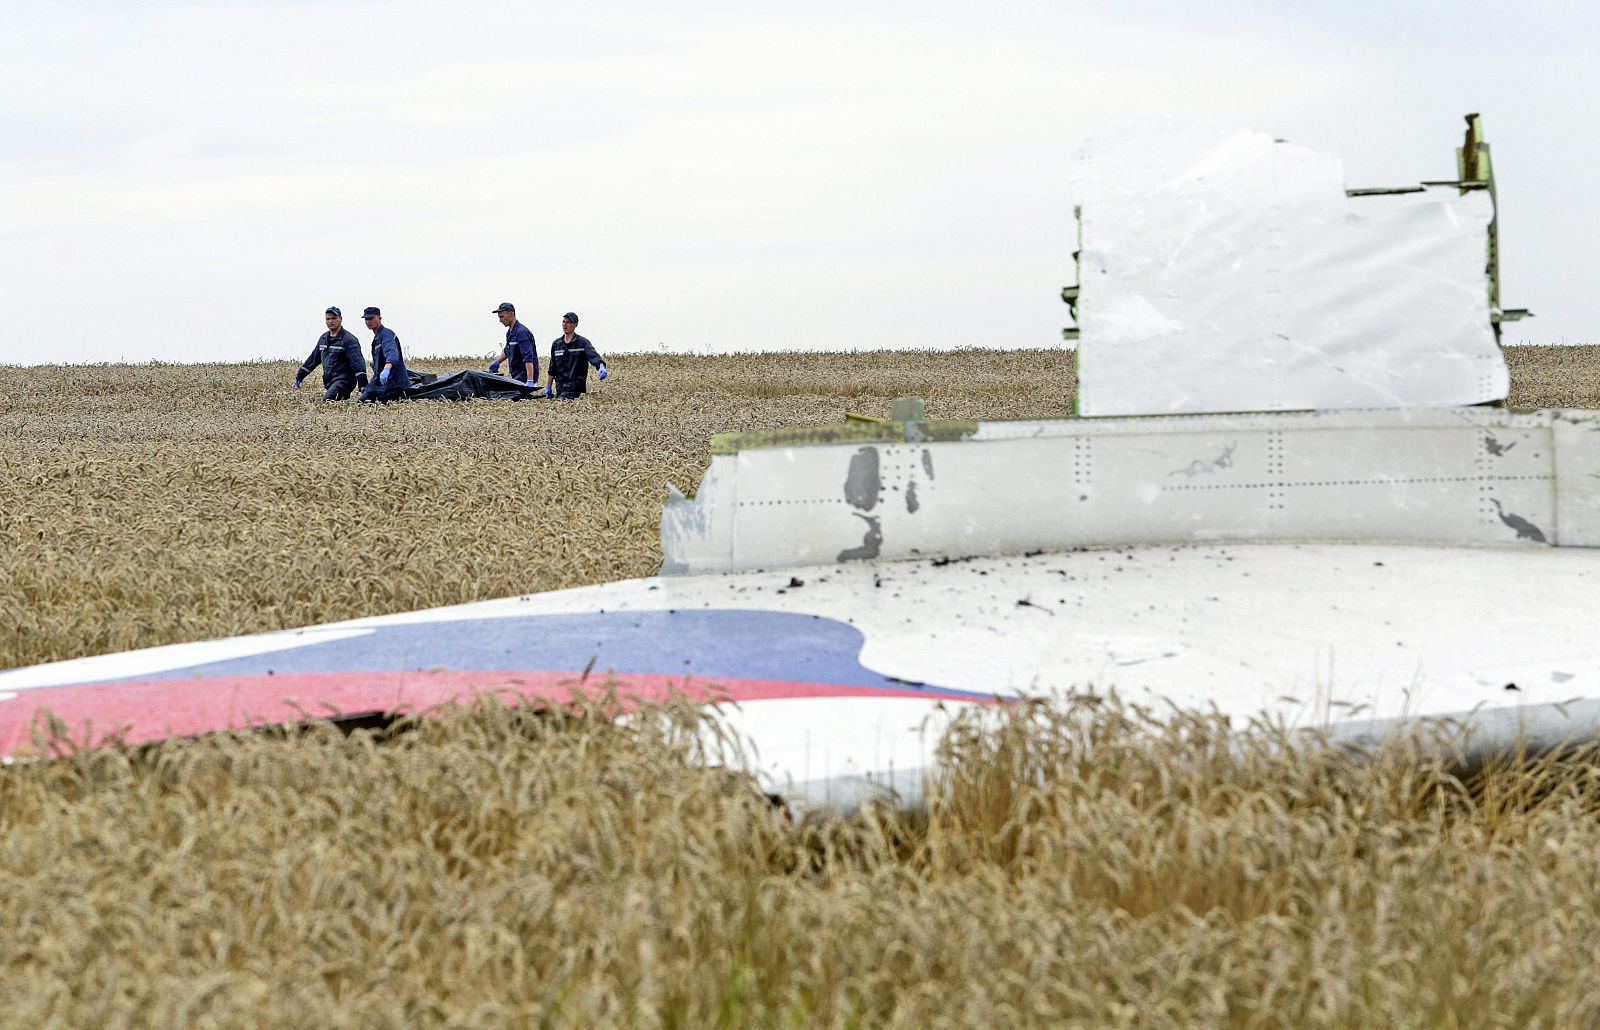 Los equipos de rescate trasladan a las víctimas del avión en el este de Ucrania